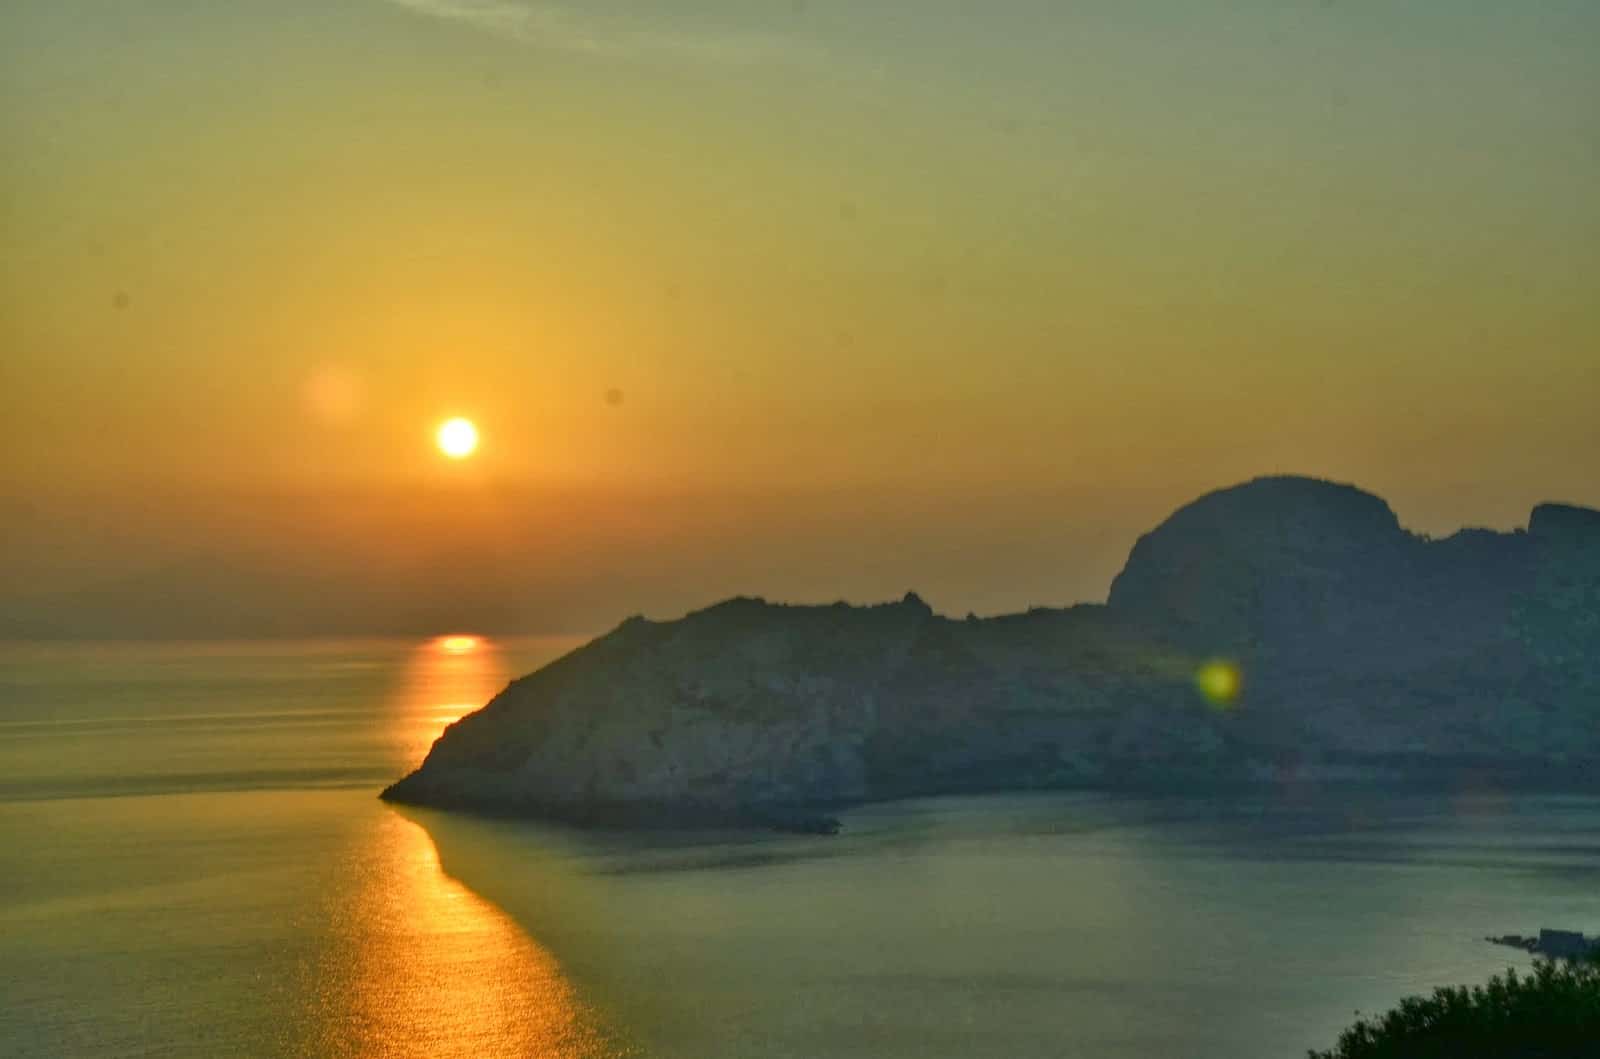 Sunset on Datça Peninsula, Turkey